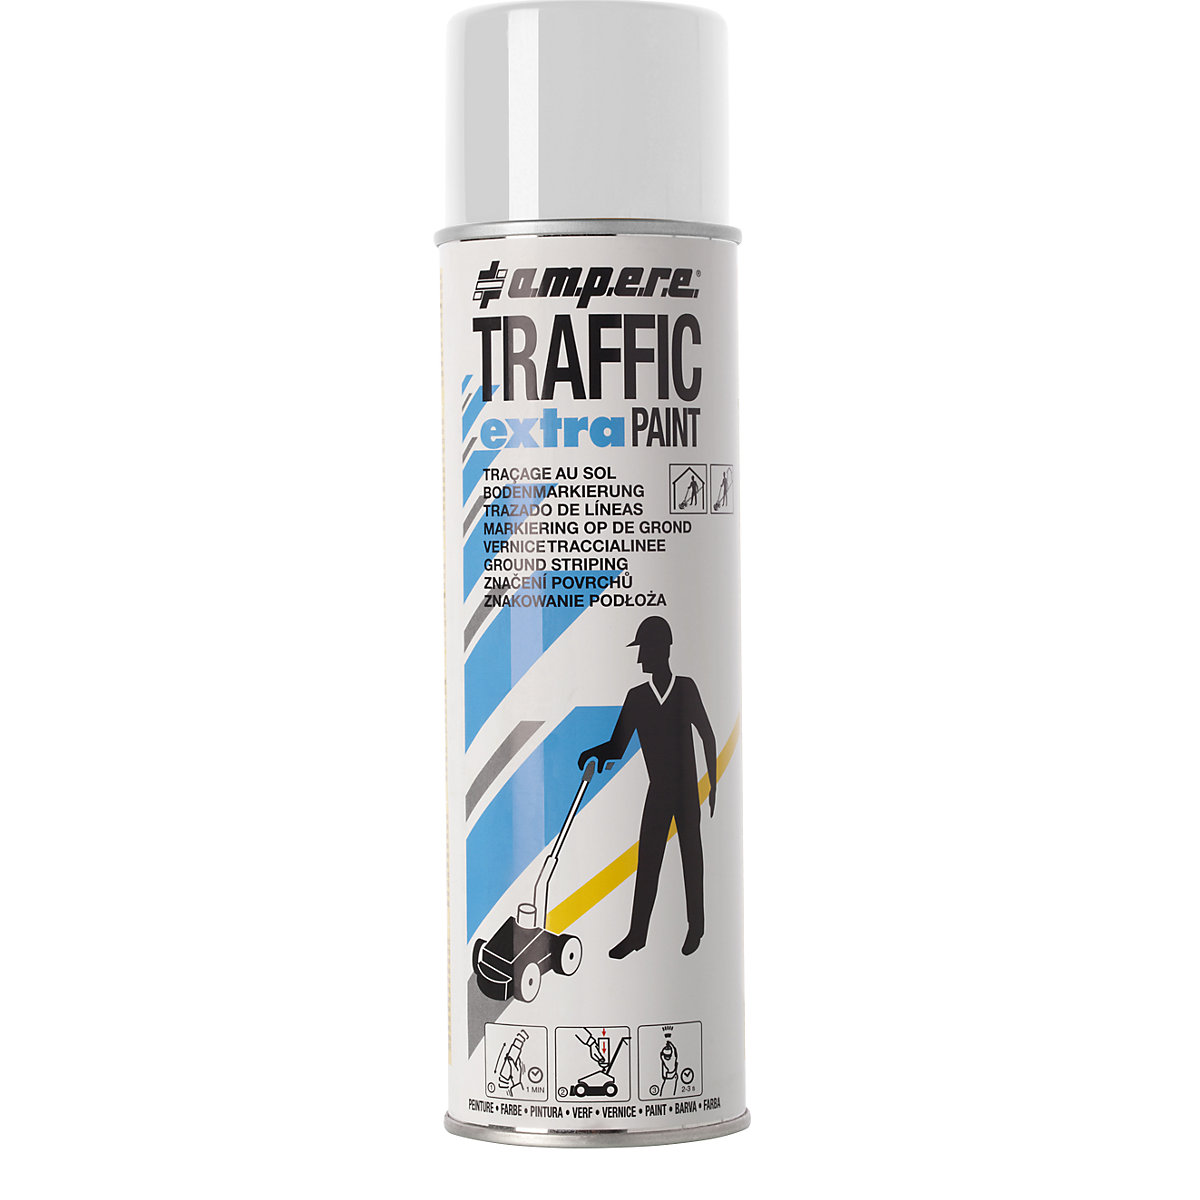 Označevalna barva Traffic extra Paint® za velike obremenitve – Ampere